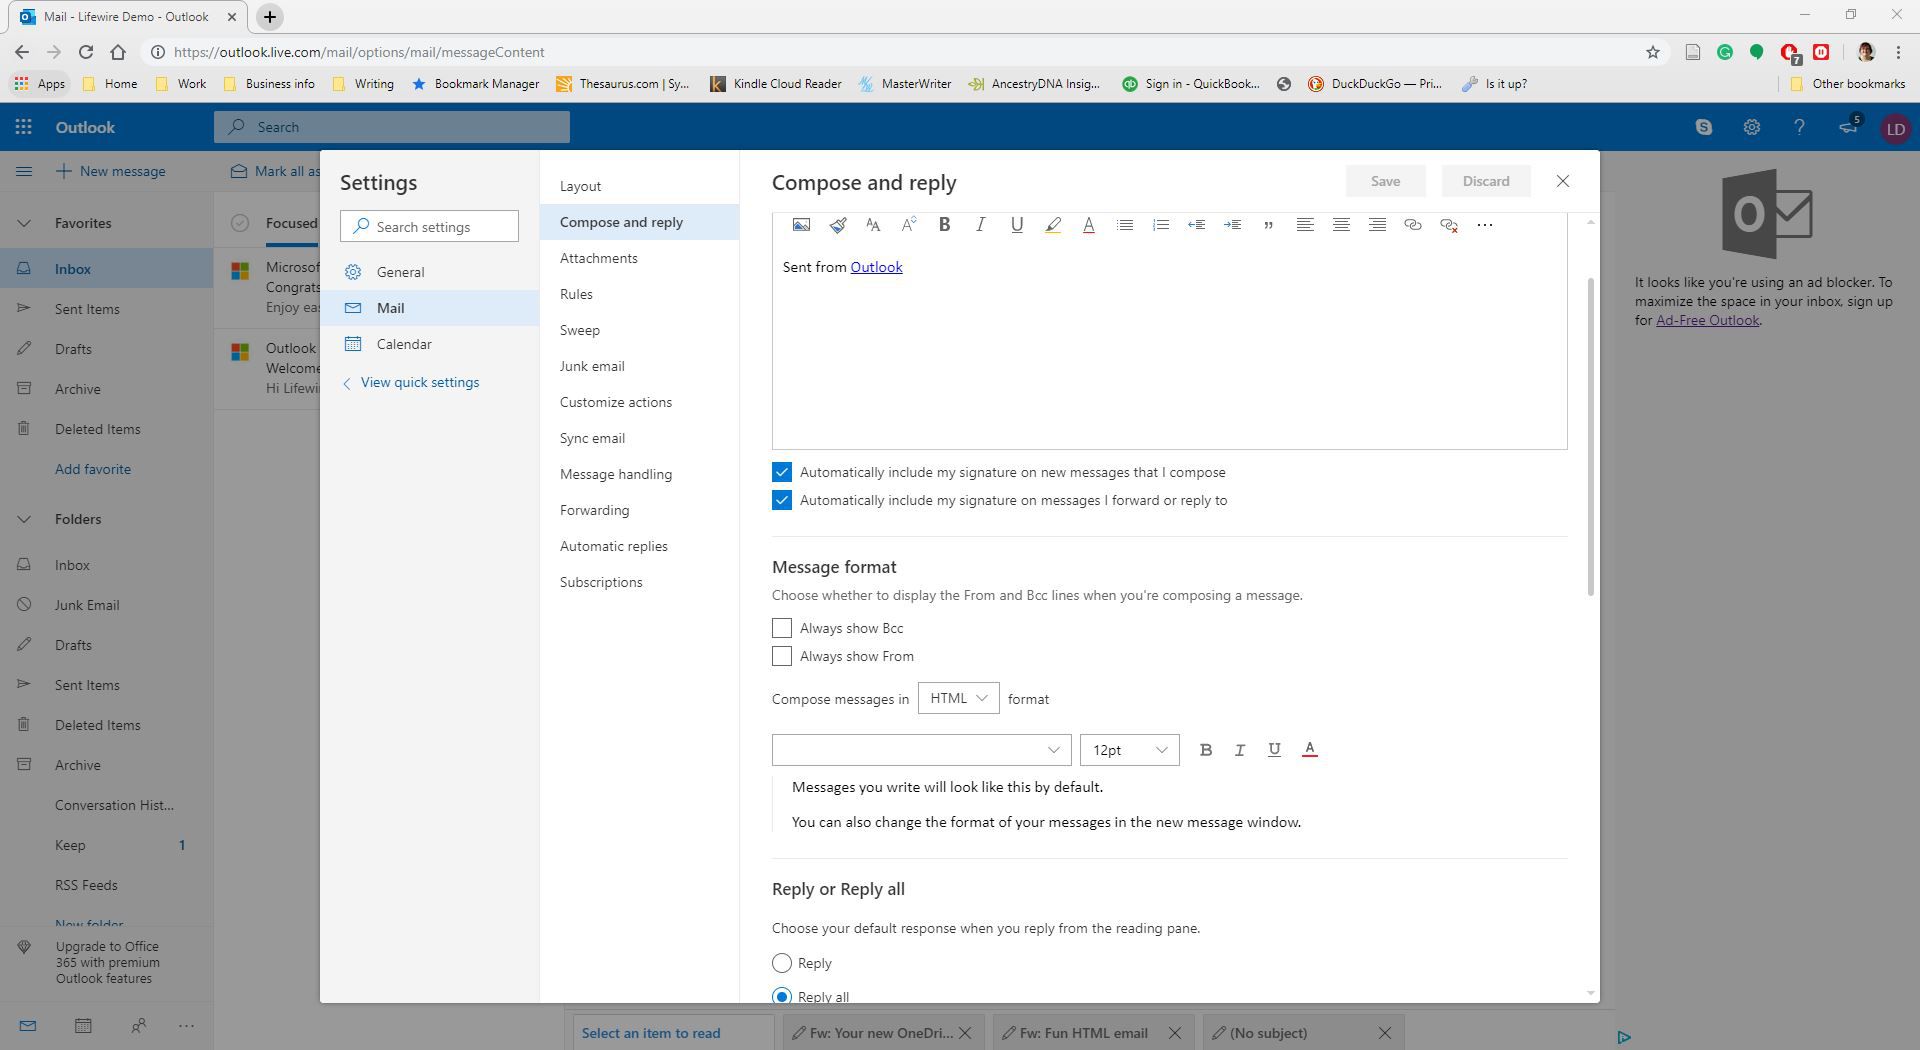 Zobrazení pokročilých nastavení v aplikaci Outlook Online.